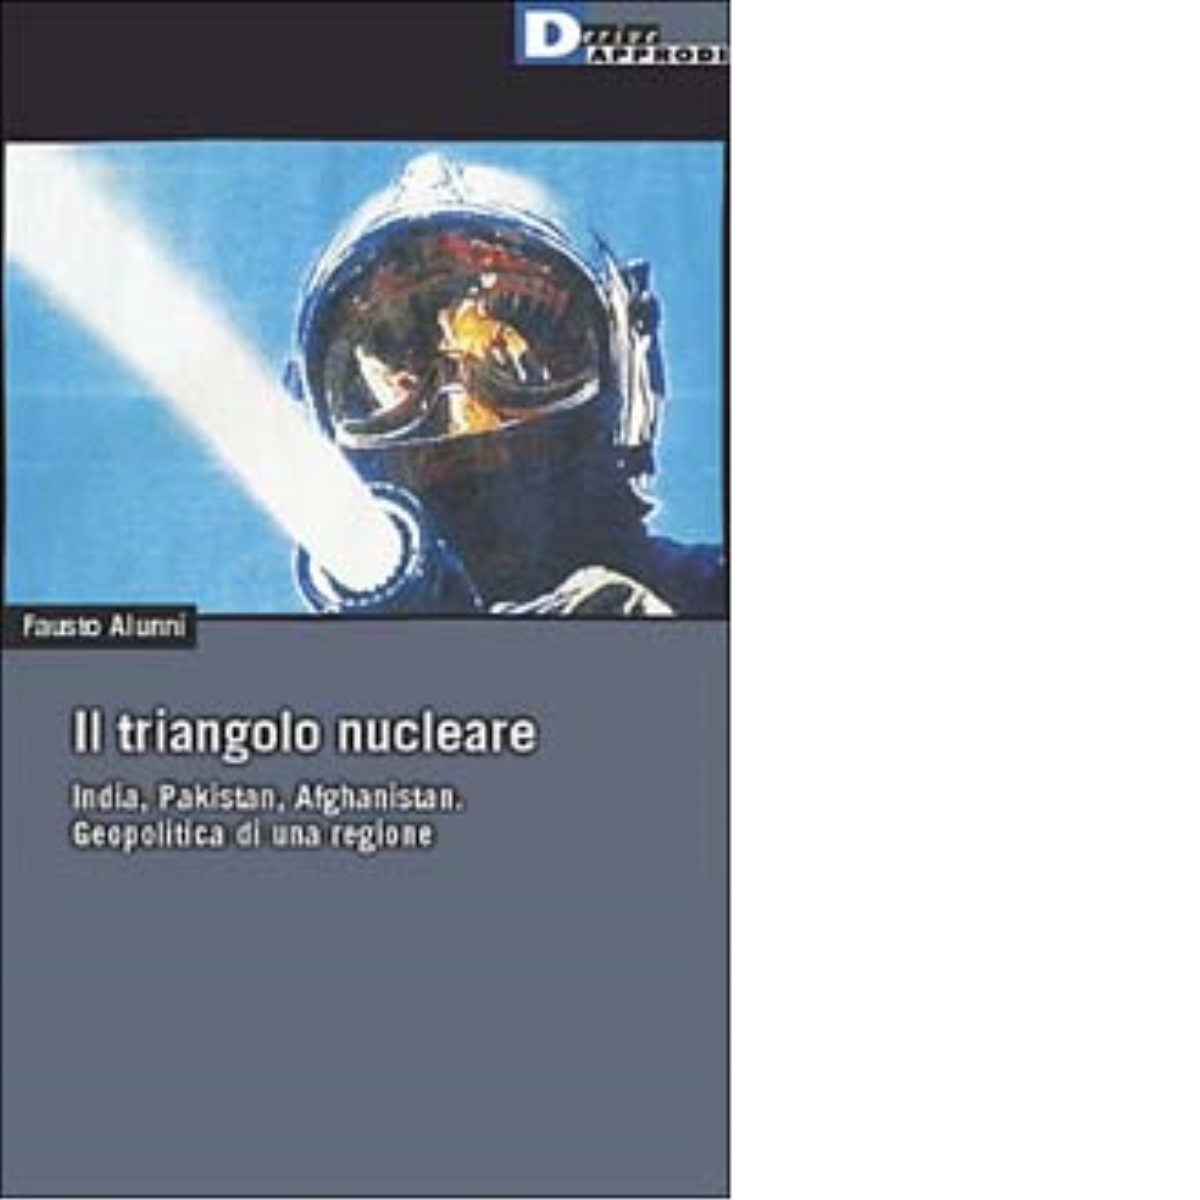 IL TRIANGOLO NUCLEARE. di FAUSTO ALUNNI - DeriveApprodi editore, 2002 libro usato